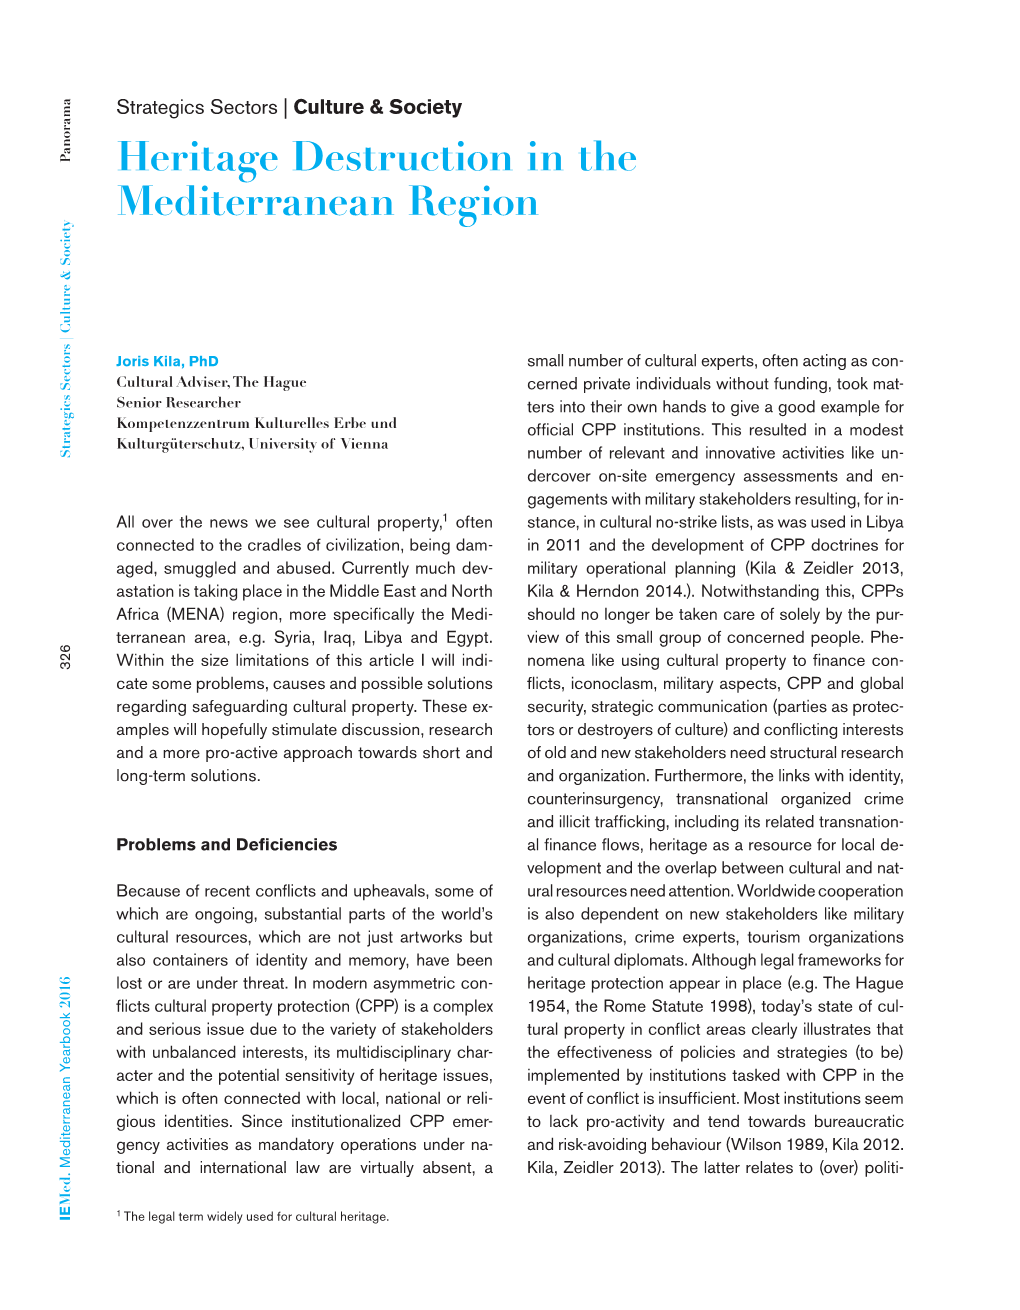 Heritage Destruction in the Mediterranean Region